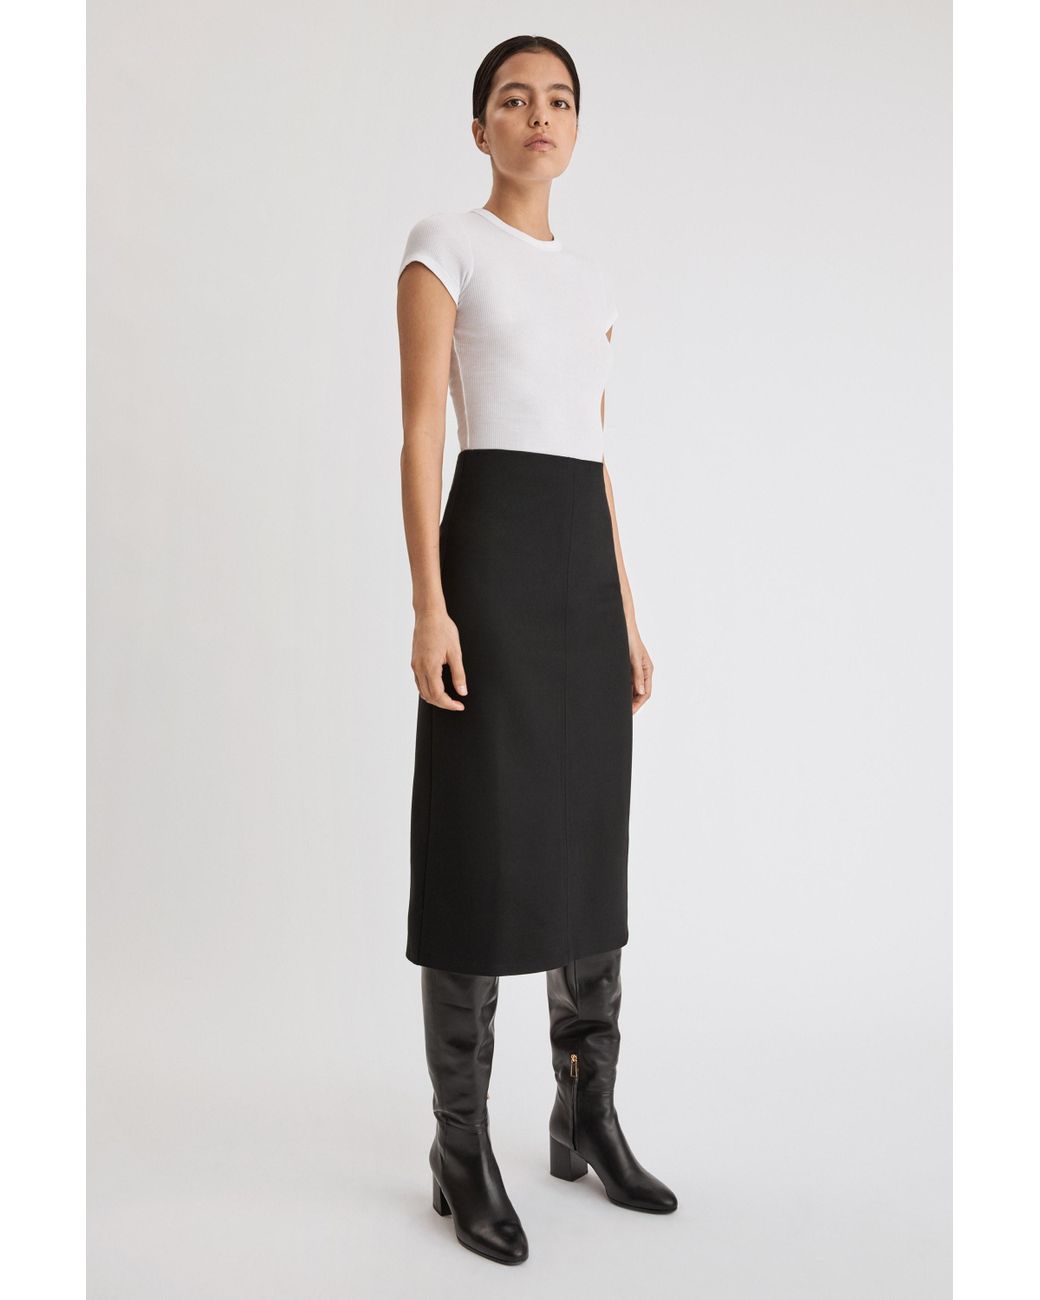 Filippa K Eva Pull-on Skirt in Black | Lyst